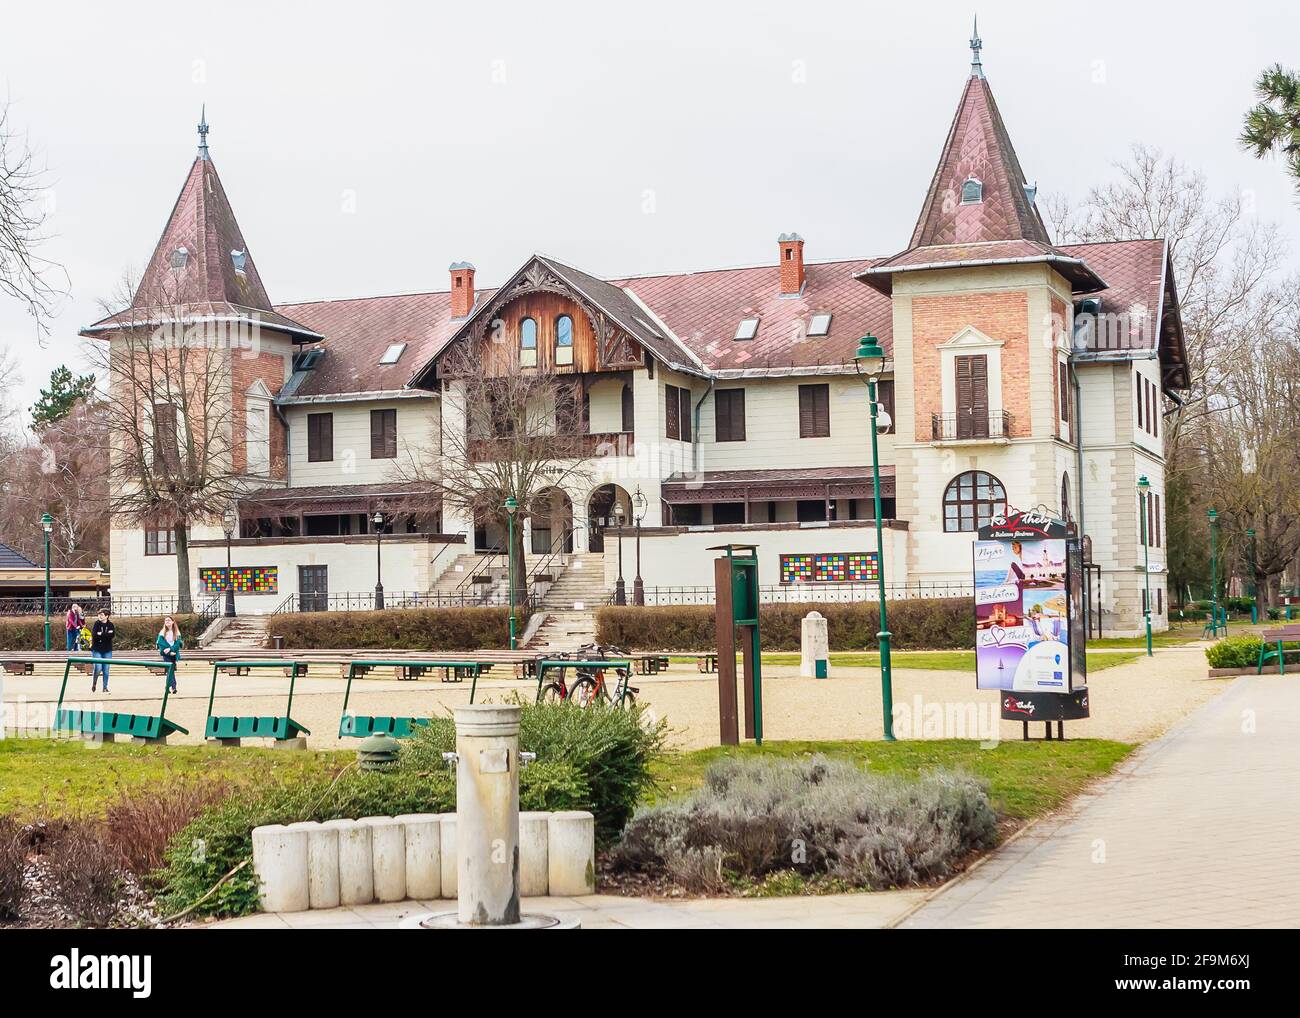 Hotel hullam wurde im Jahr 1894 eröffnet. Das Hotel befindet sich am Ufer des Balaton in Keszthely, Zala county, West Transdanubien, Ungarn, Europa Stockfoto